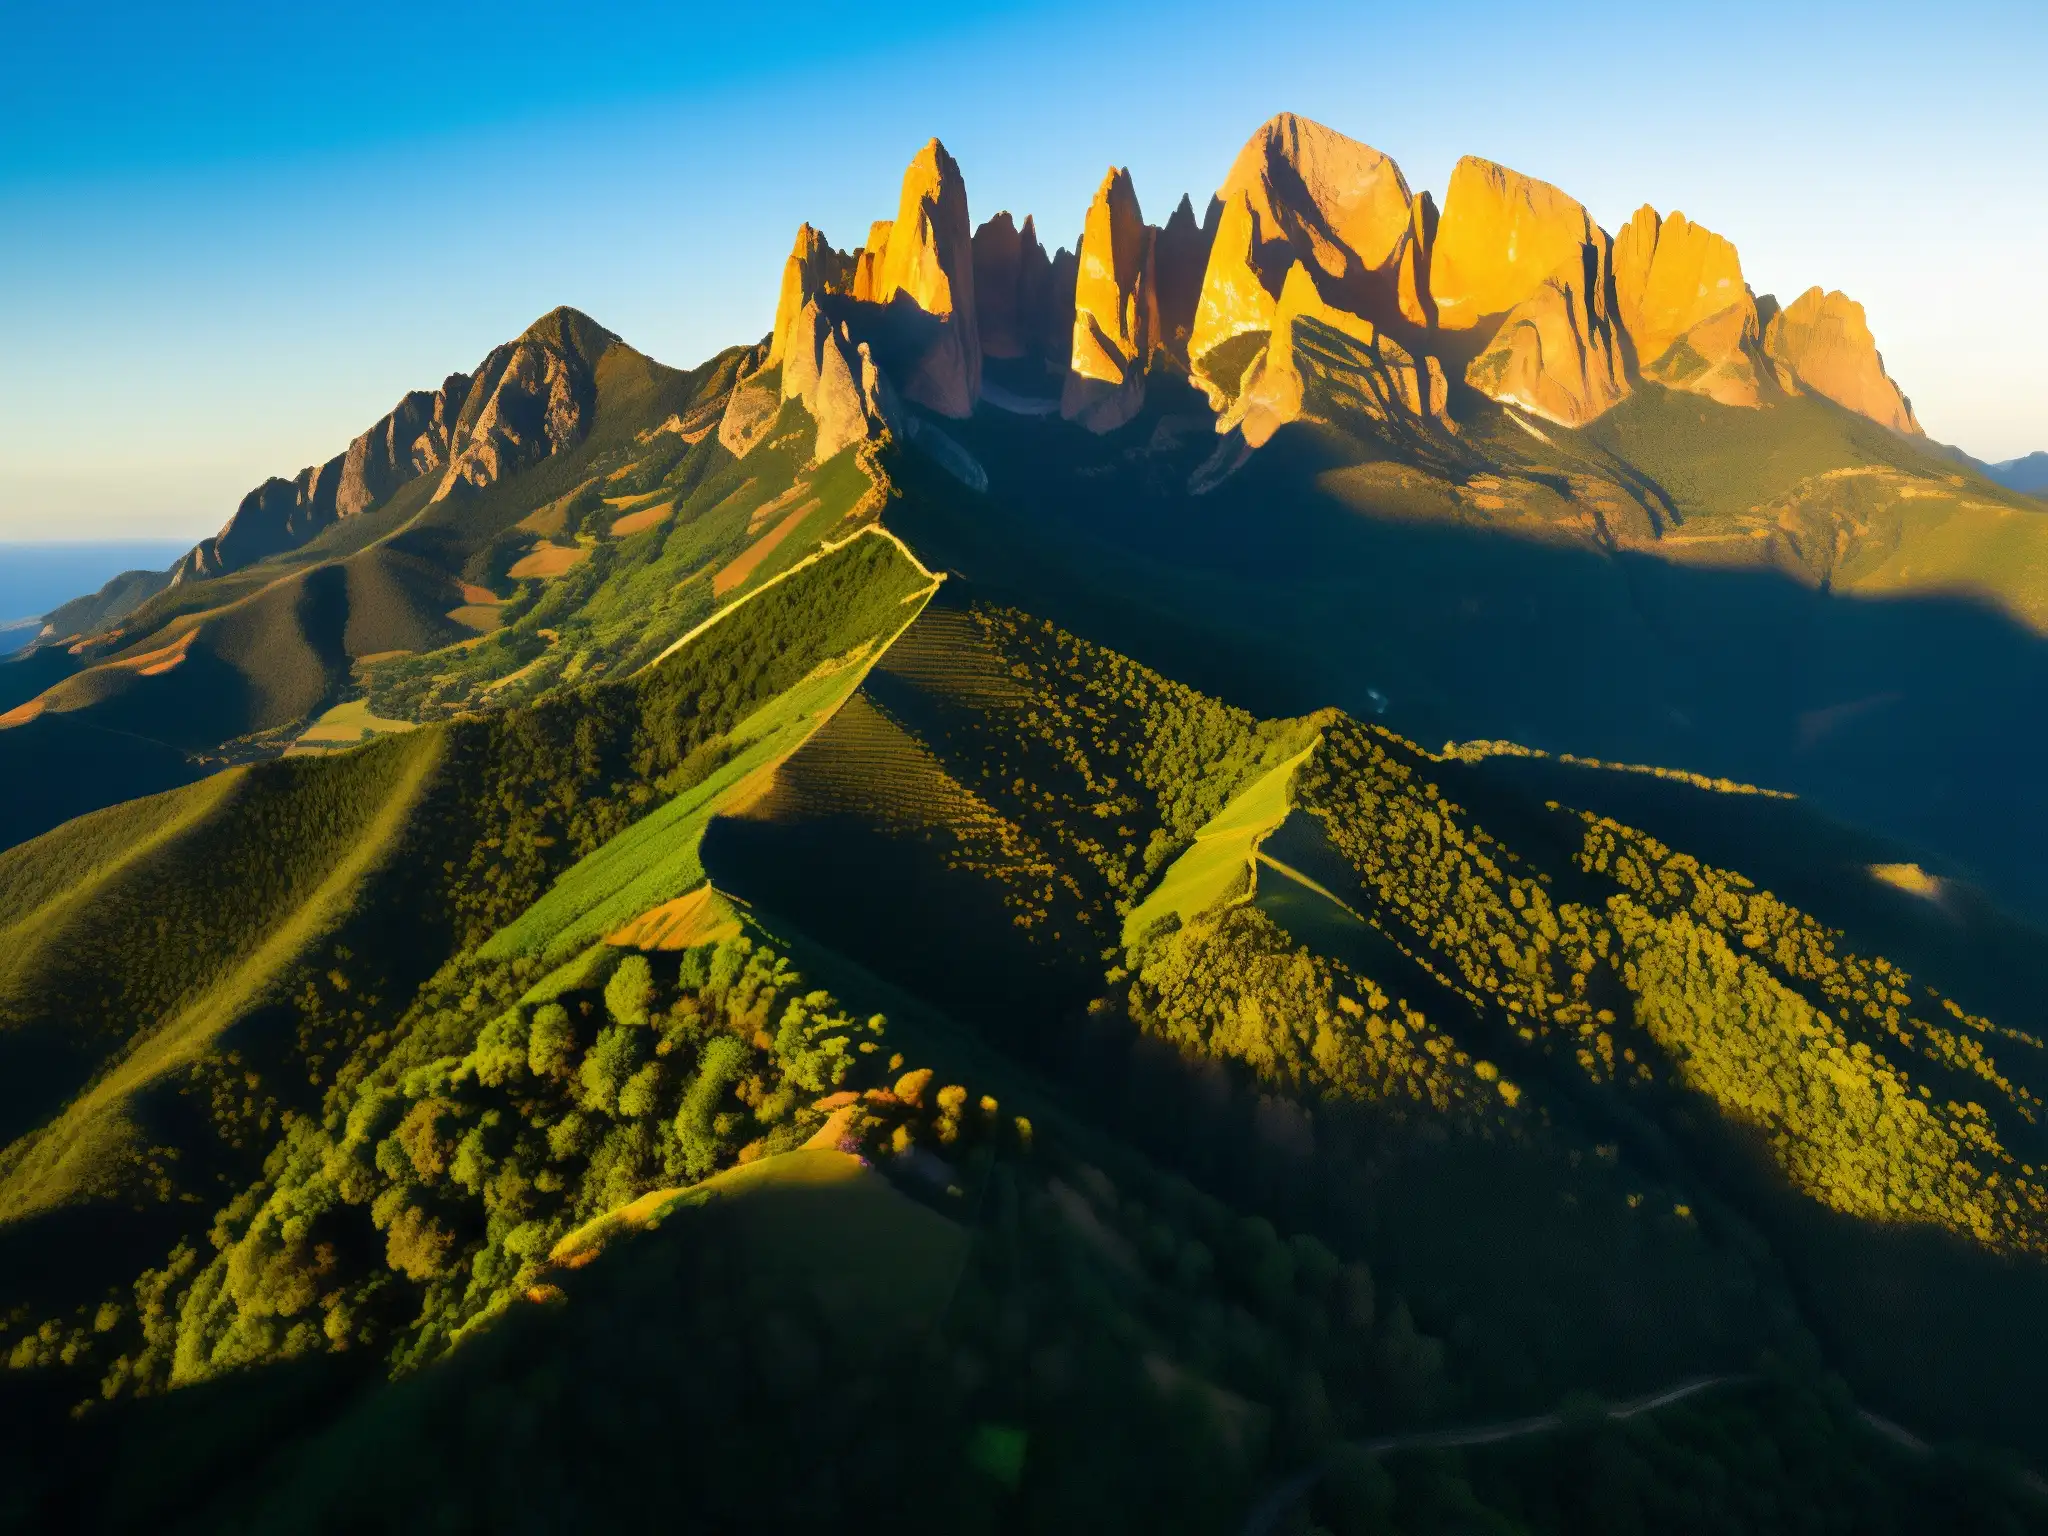 Vista aérea del místico y legendario Montserrat, con sus picos escarpados y vegetación exuberante, bañados por la cálida luz dorada del atardecer